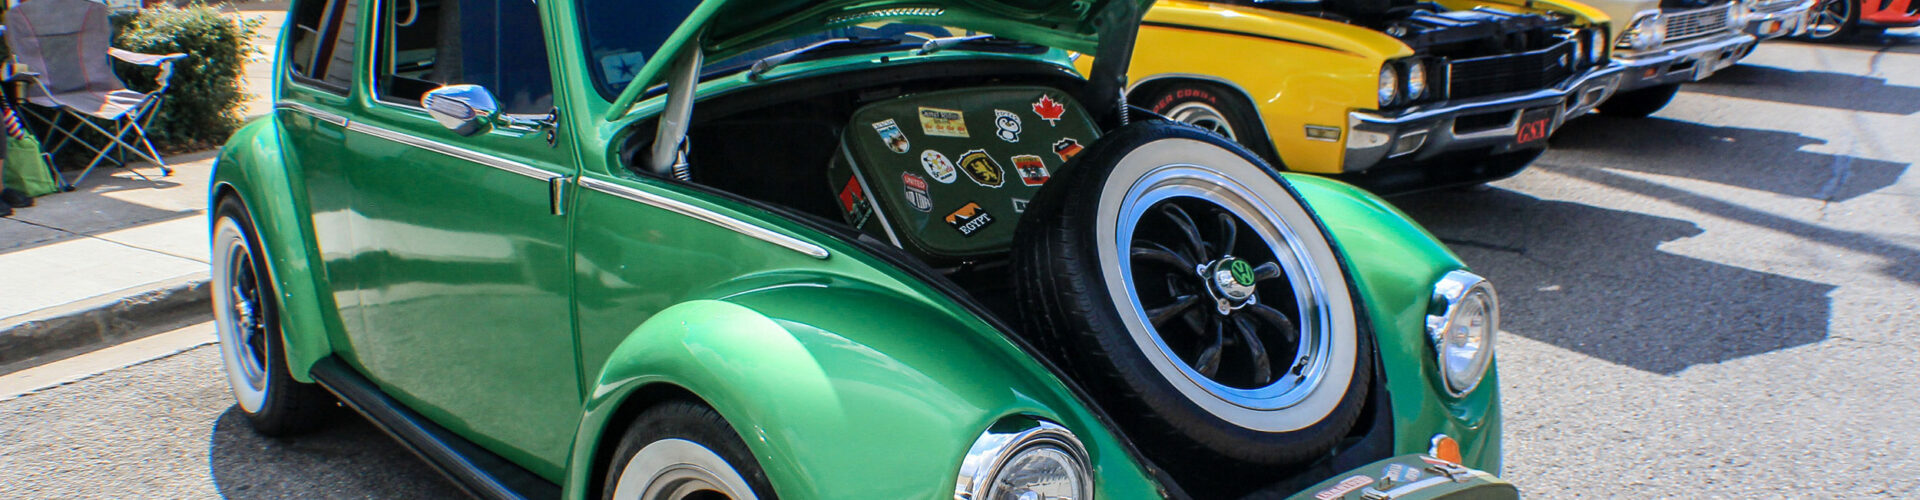 Green Volkswagen Beetle during daytime